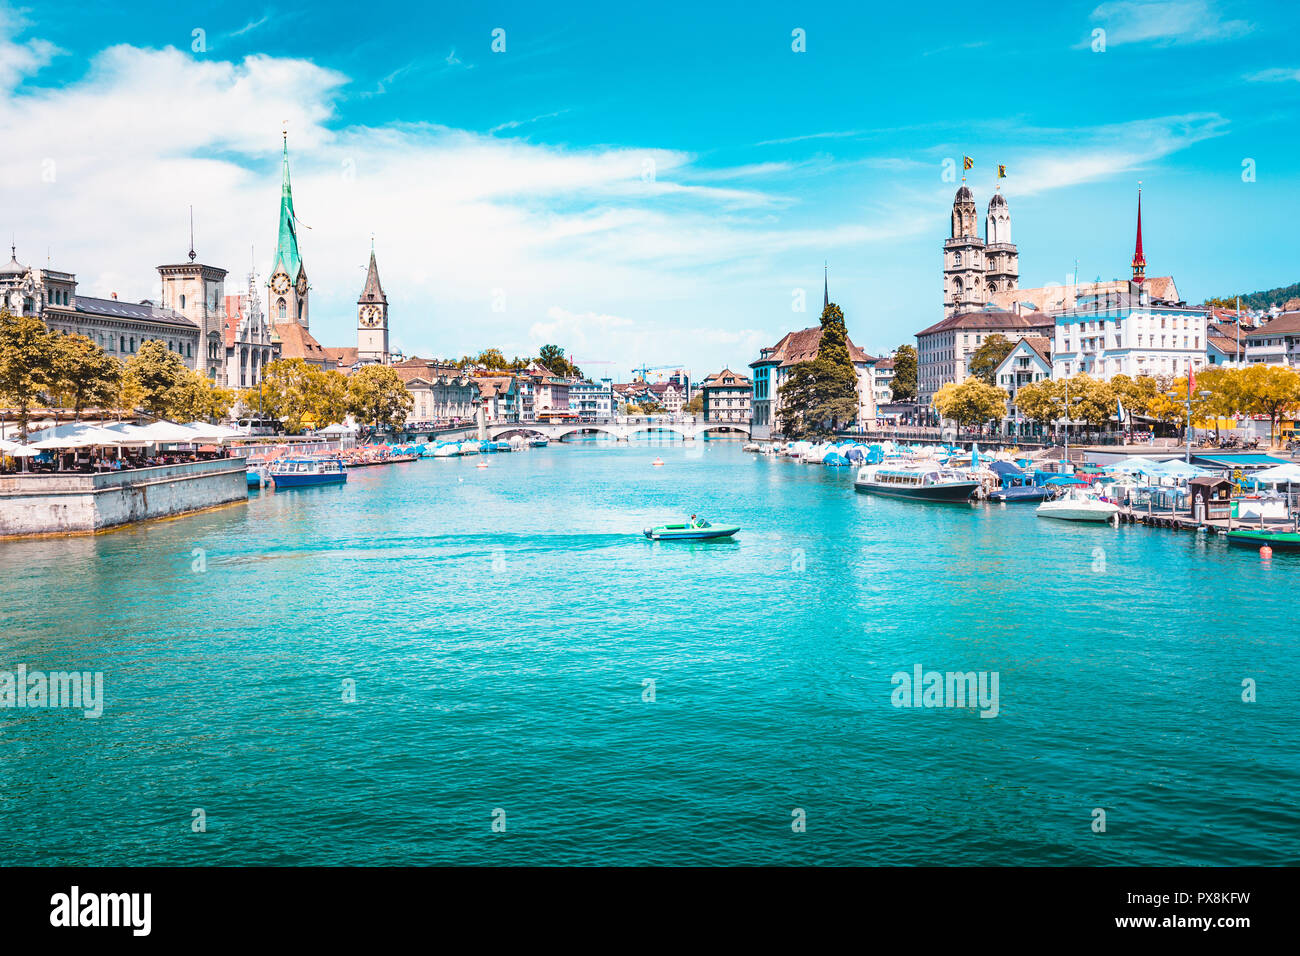 Vue panoramique du centre-ville de Zurich avec les églises et les bateaux sur la magnifique rivière Limmat en été, Canton de Zurich, Suisse Banque D'Images